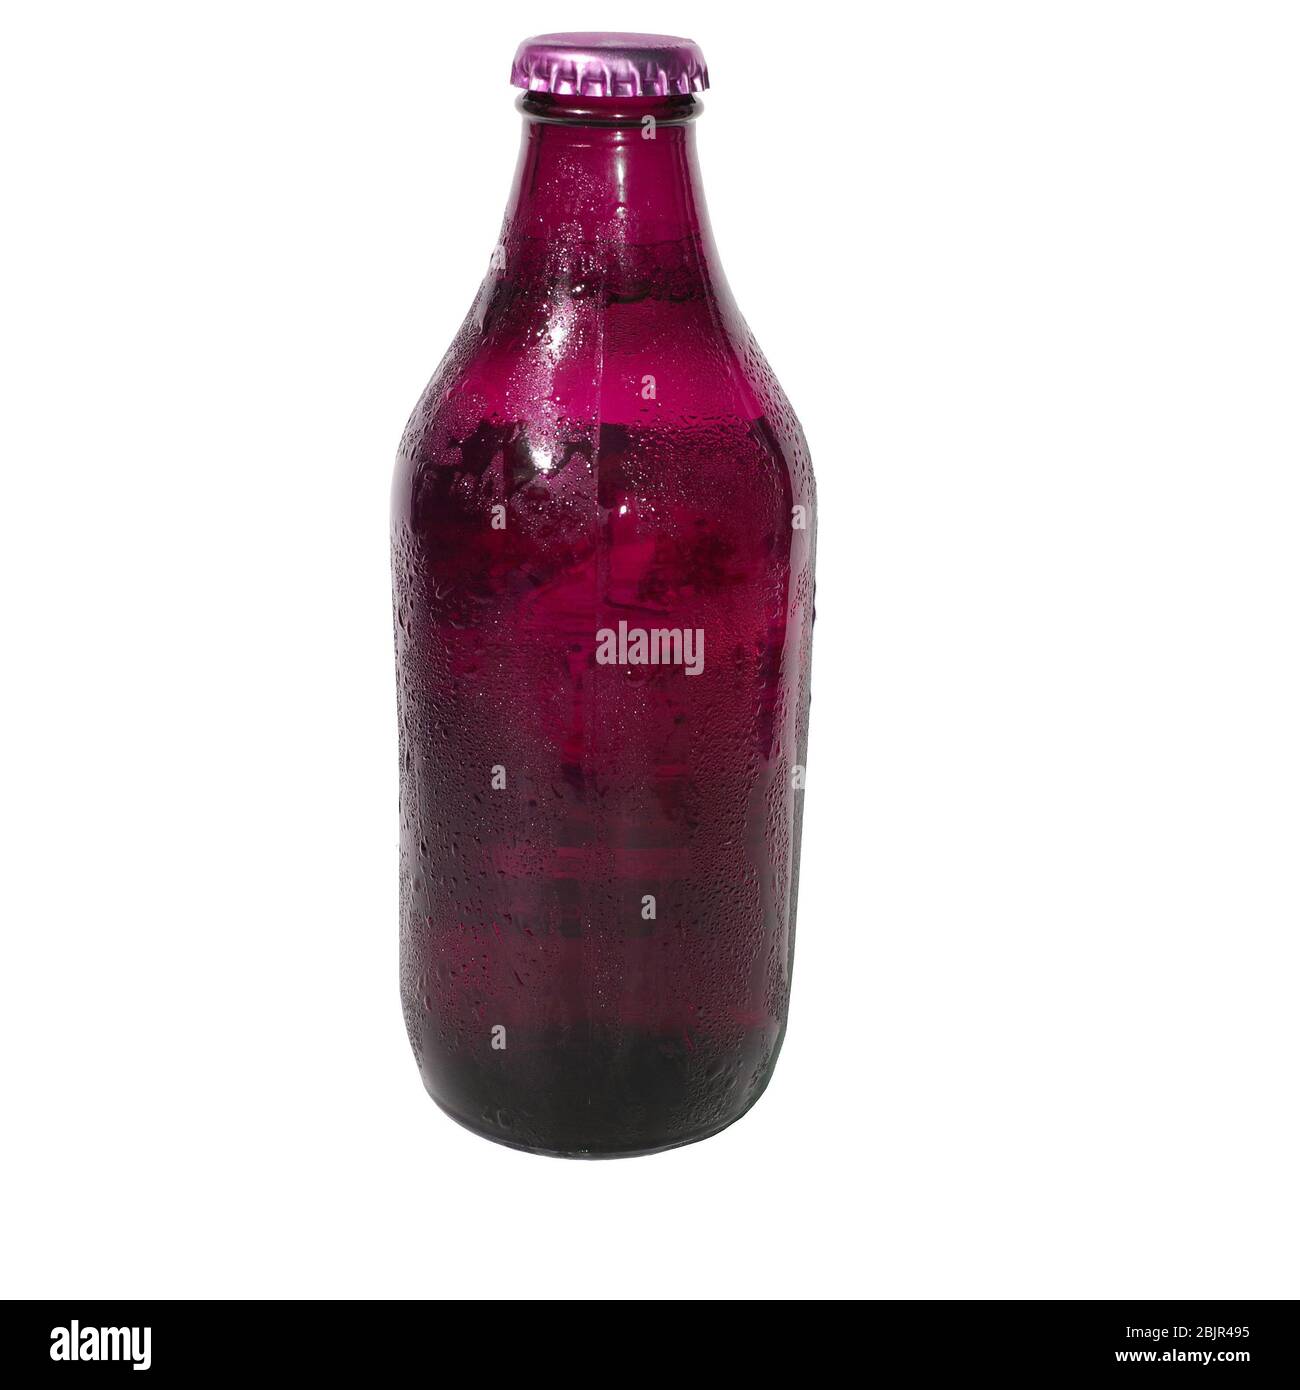 Eine sehr kalte Malve-Flasche Bier, direkt aus dem Kühlschrank mit Kondenswasser auf dem Glas, isoliert vor weißem Hintergrund Stockfoto